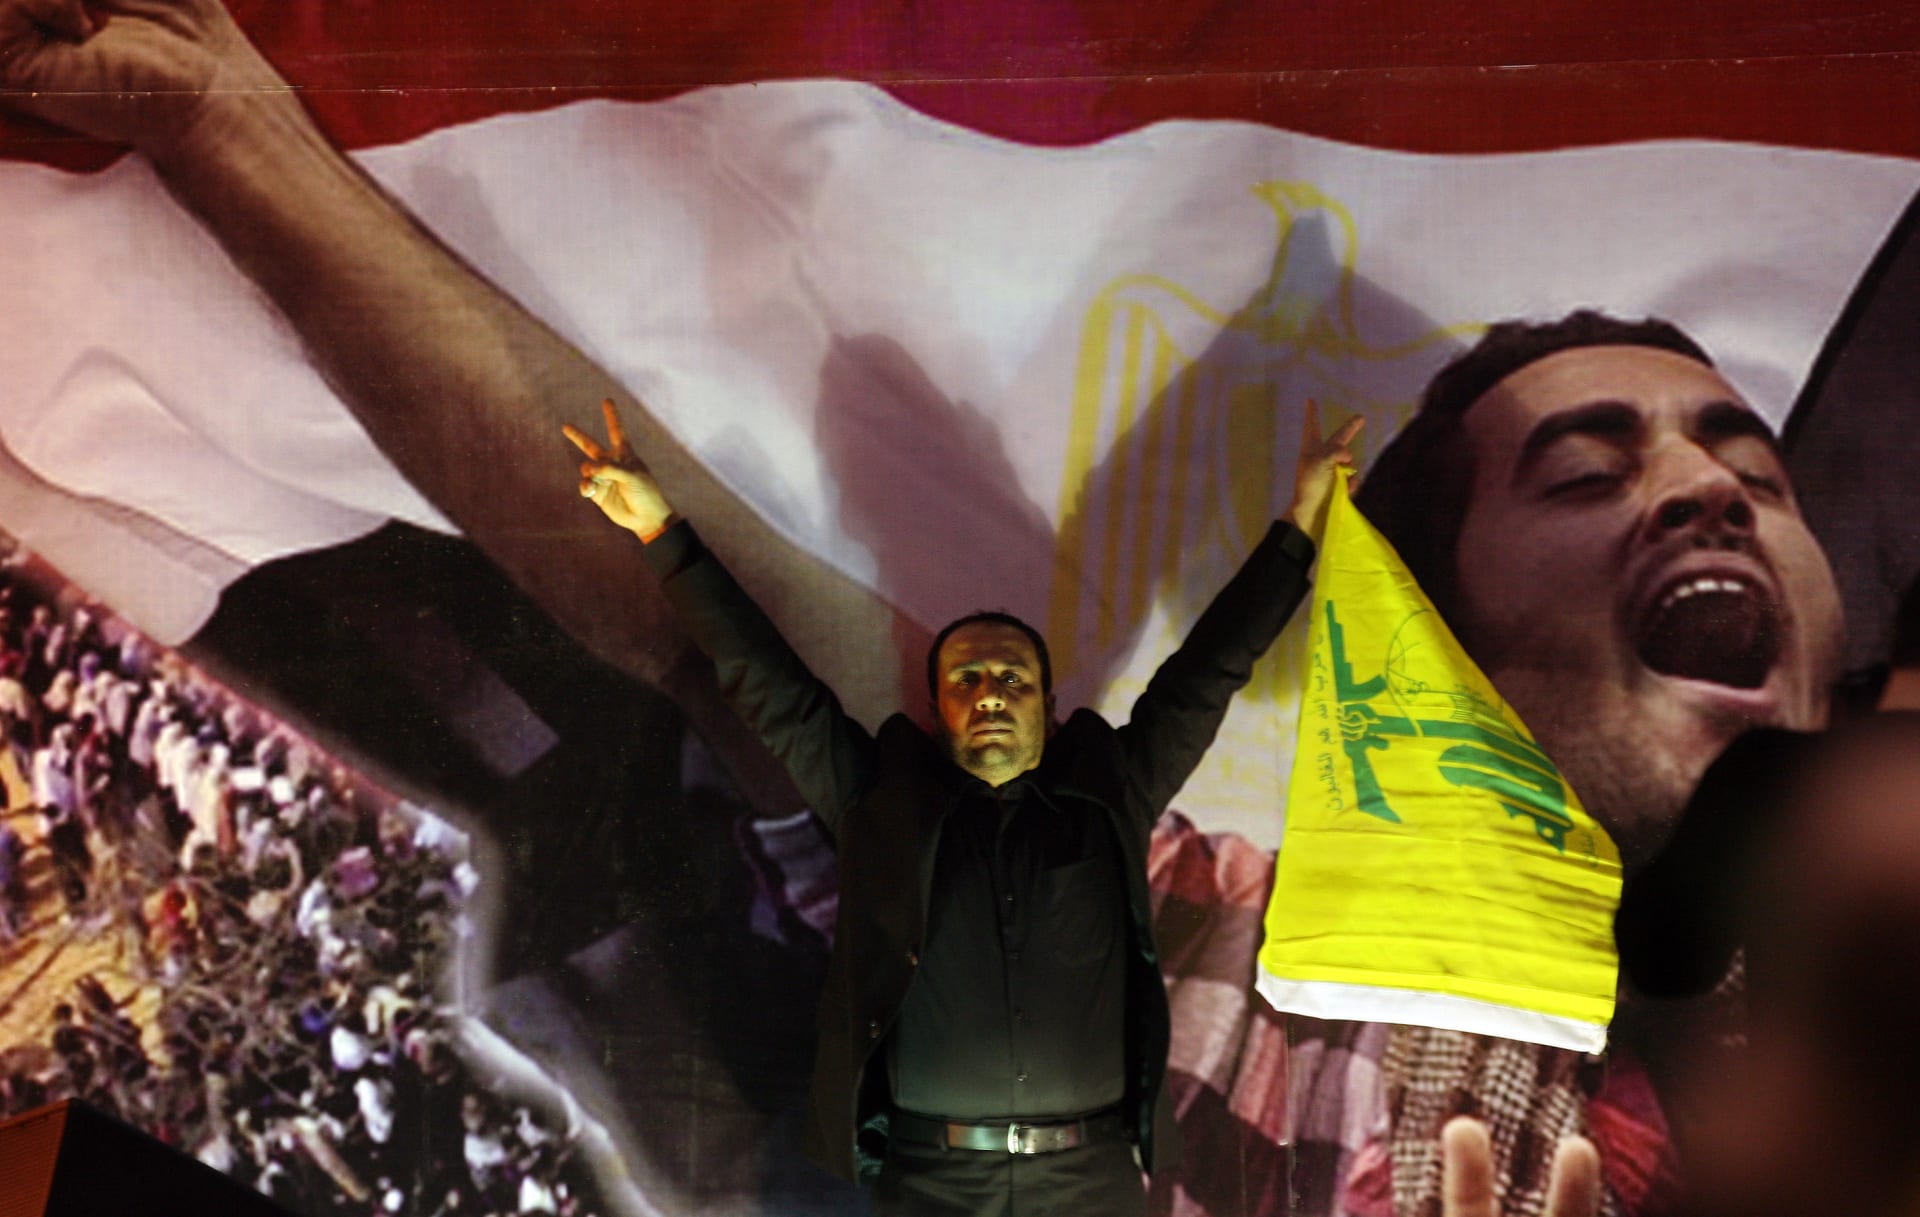 جدل حول زيارة حزب الله للقاهرة تحت شعار "التعزية بهيكل".. وشيخ الأزهر من جاكارتا: السنة والشيعة إخوان